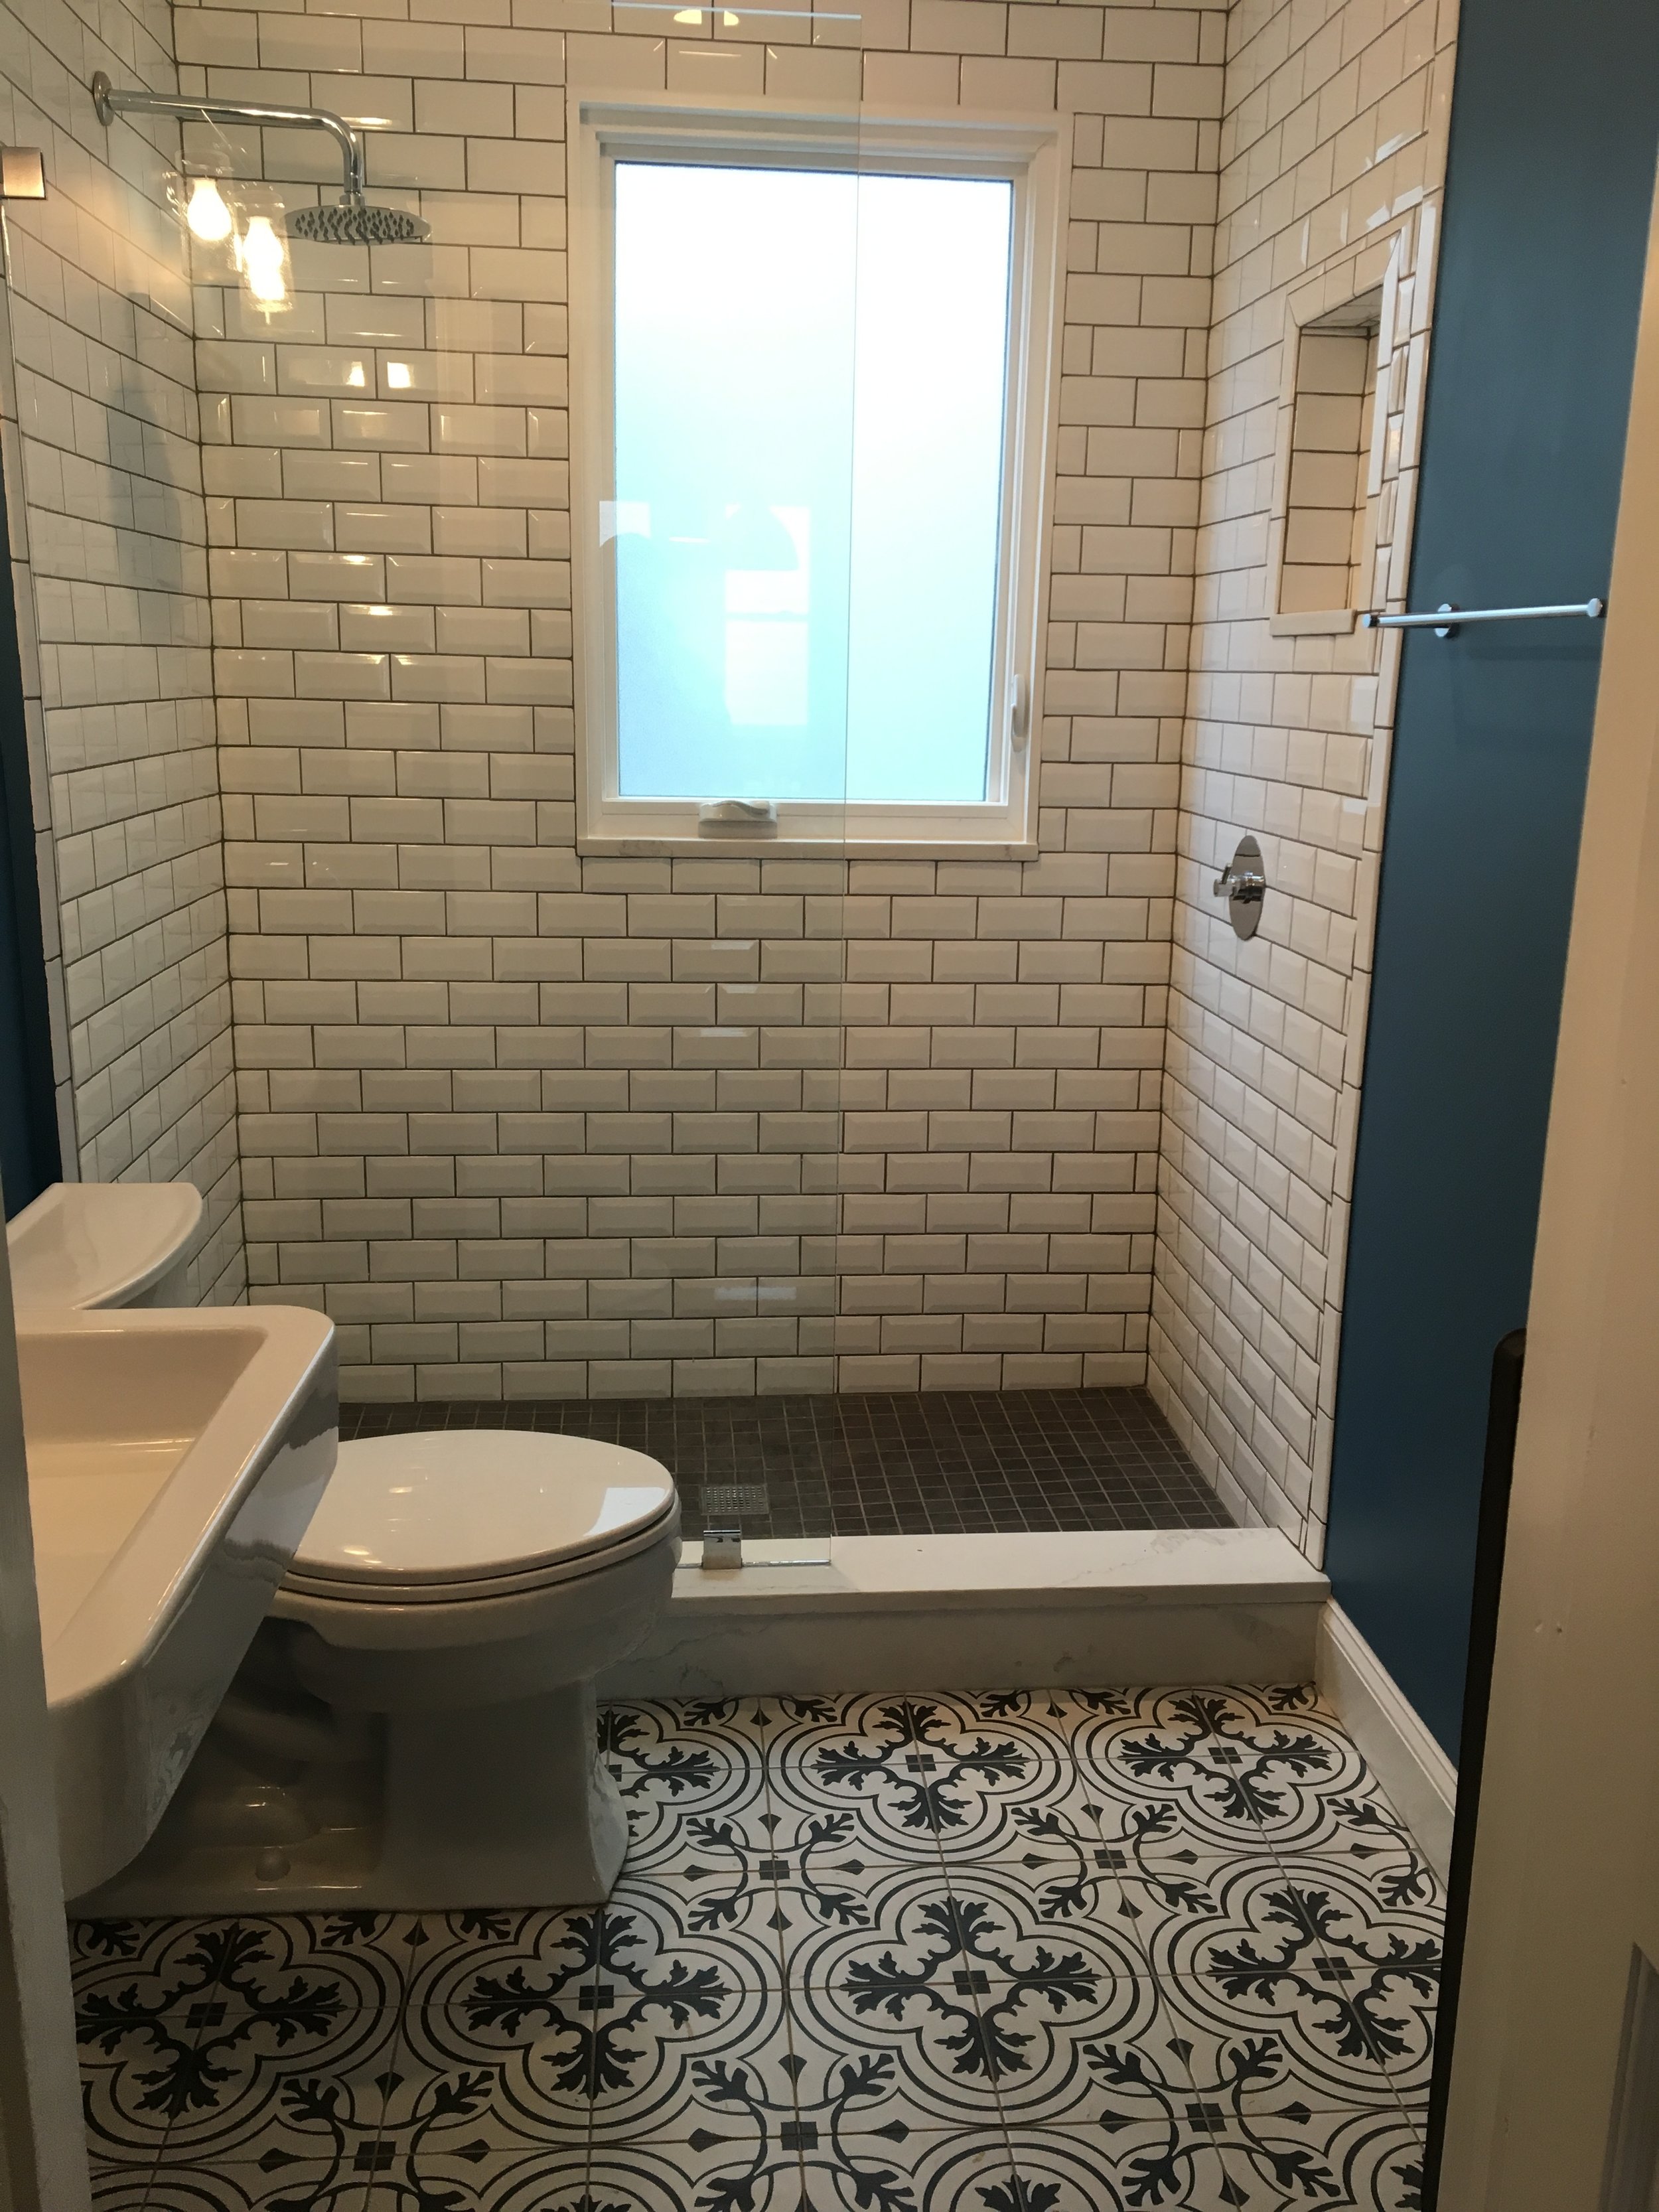 Weiss bathroom tile 2.jpg